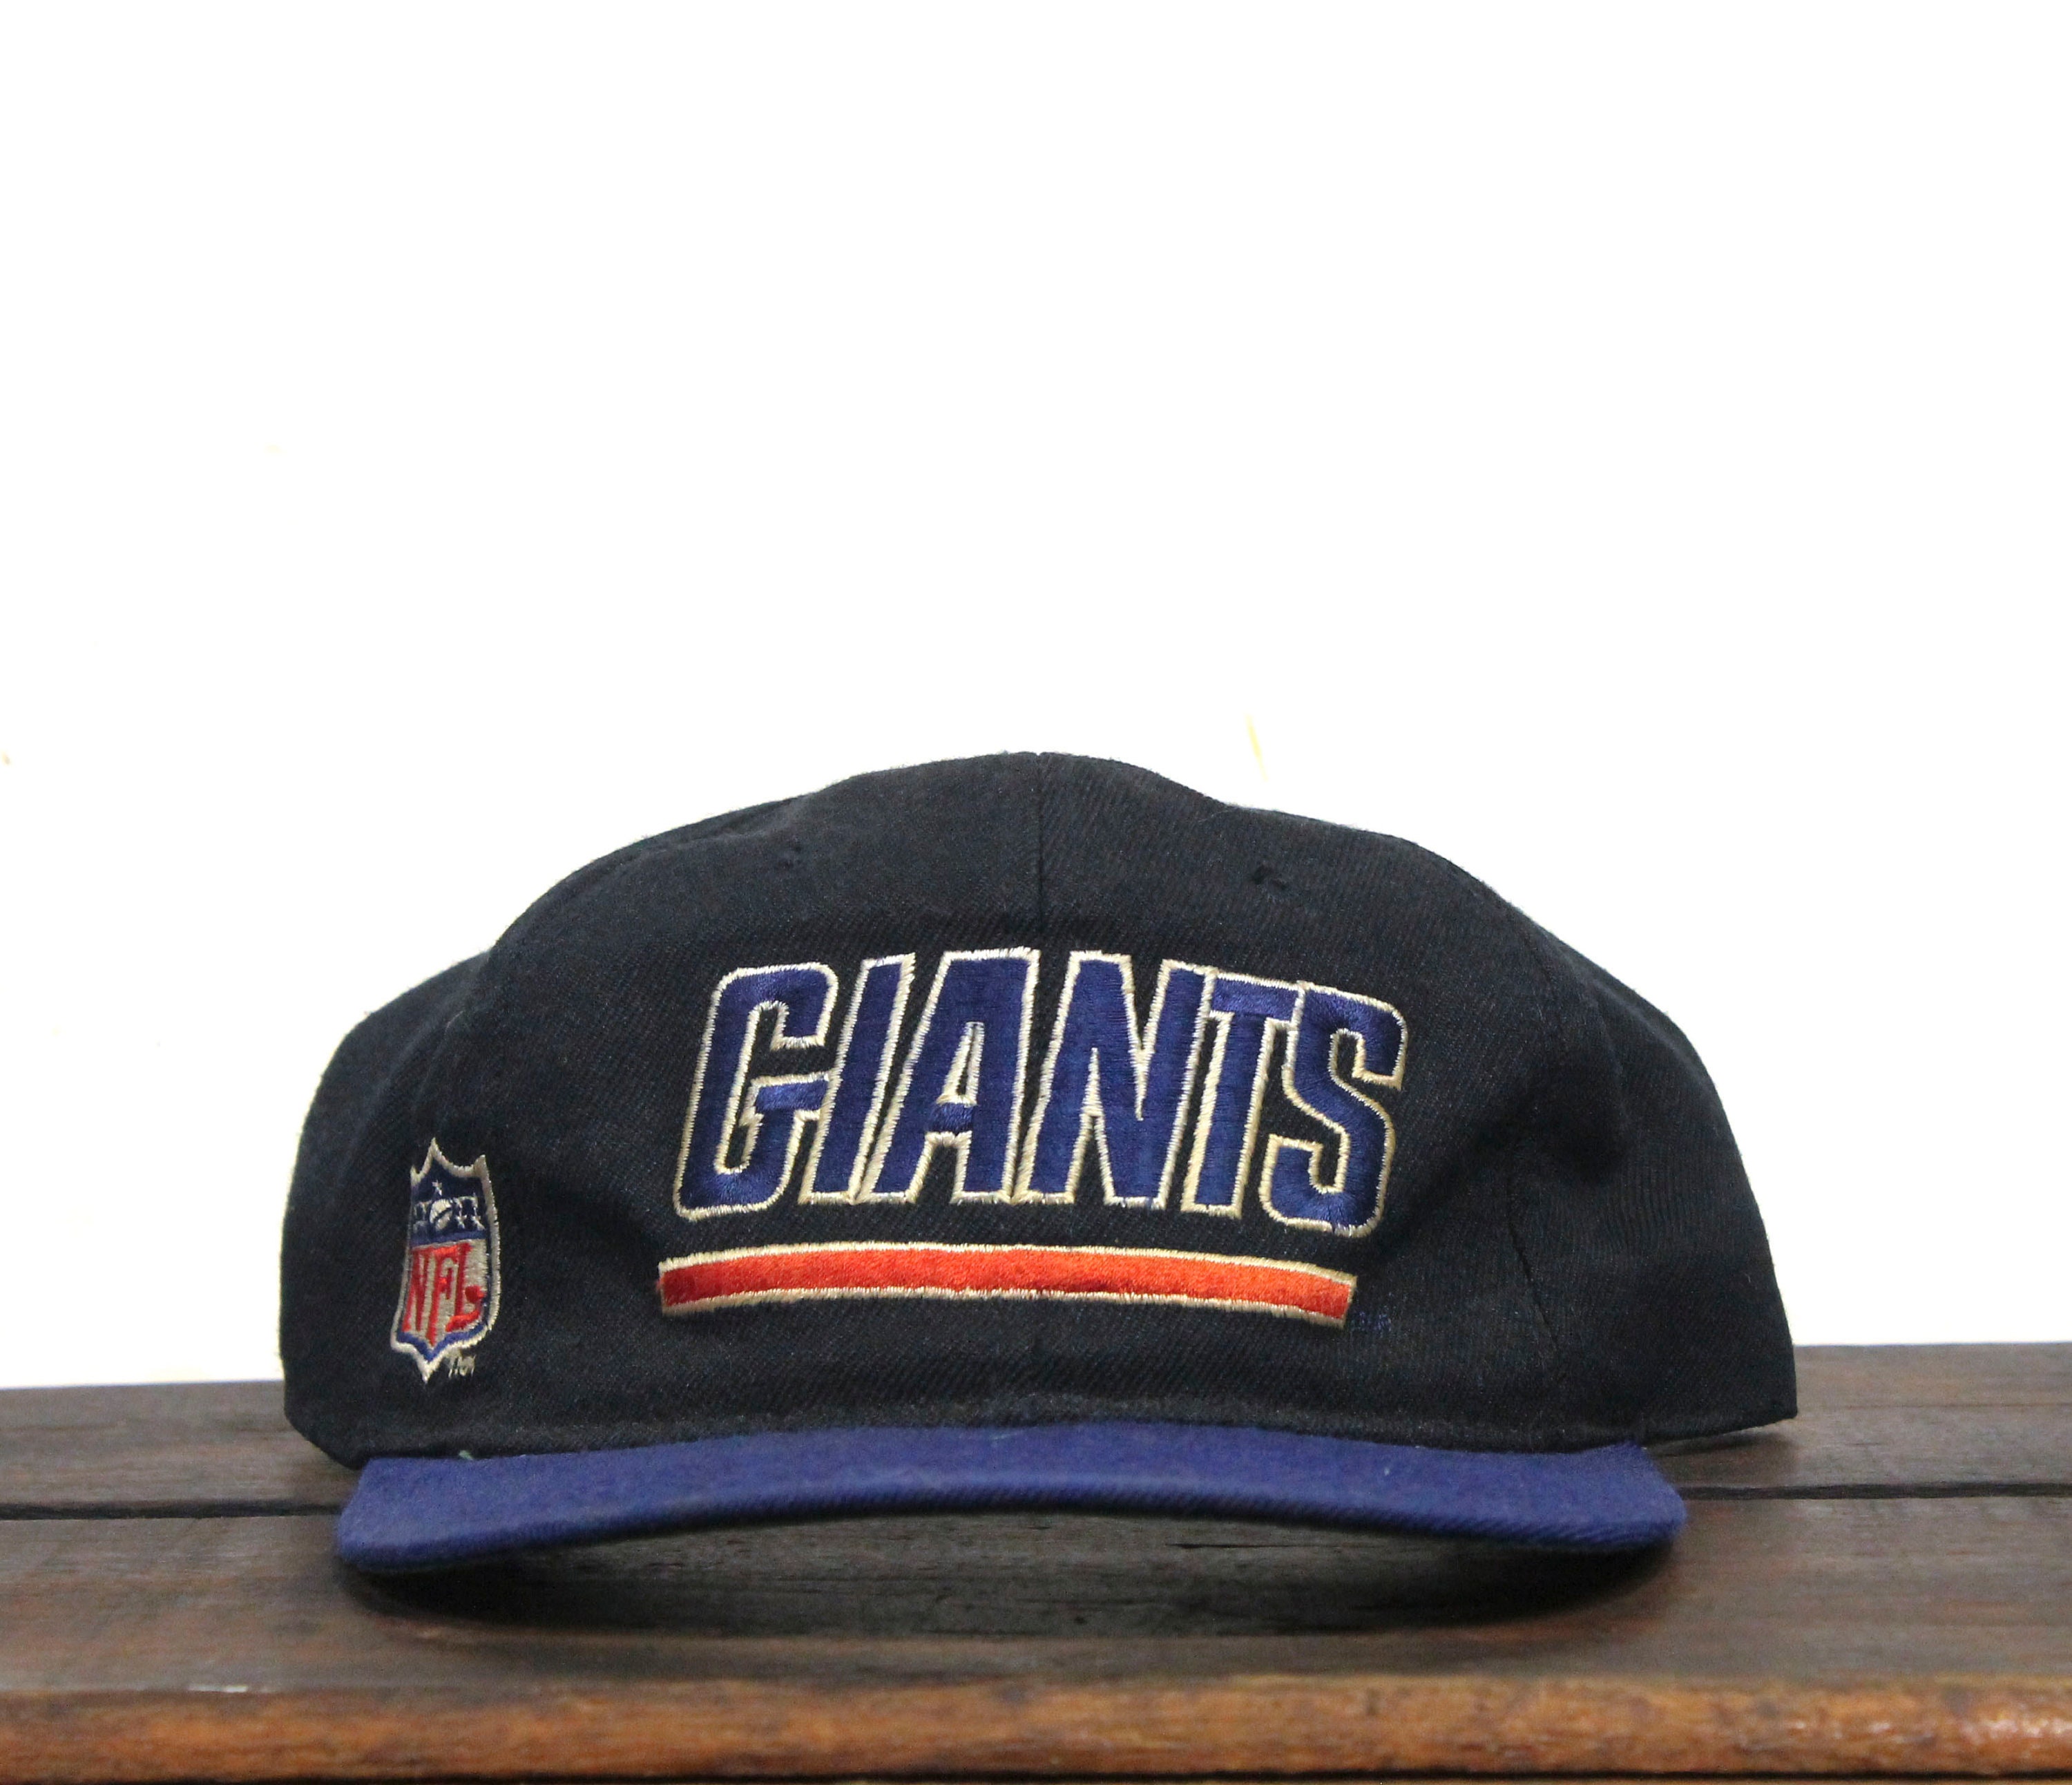 Ny Giants Hats -  Canada